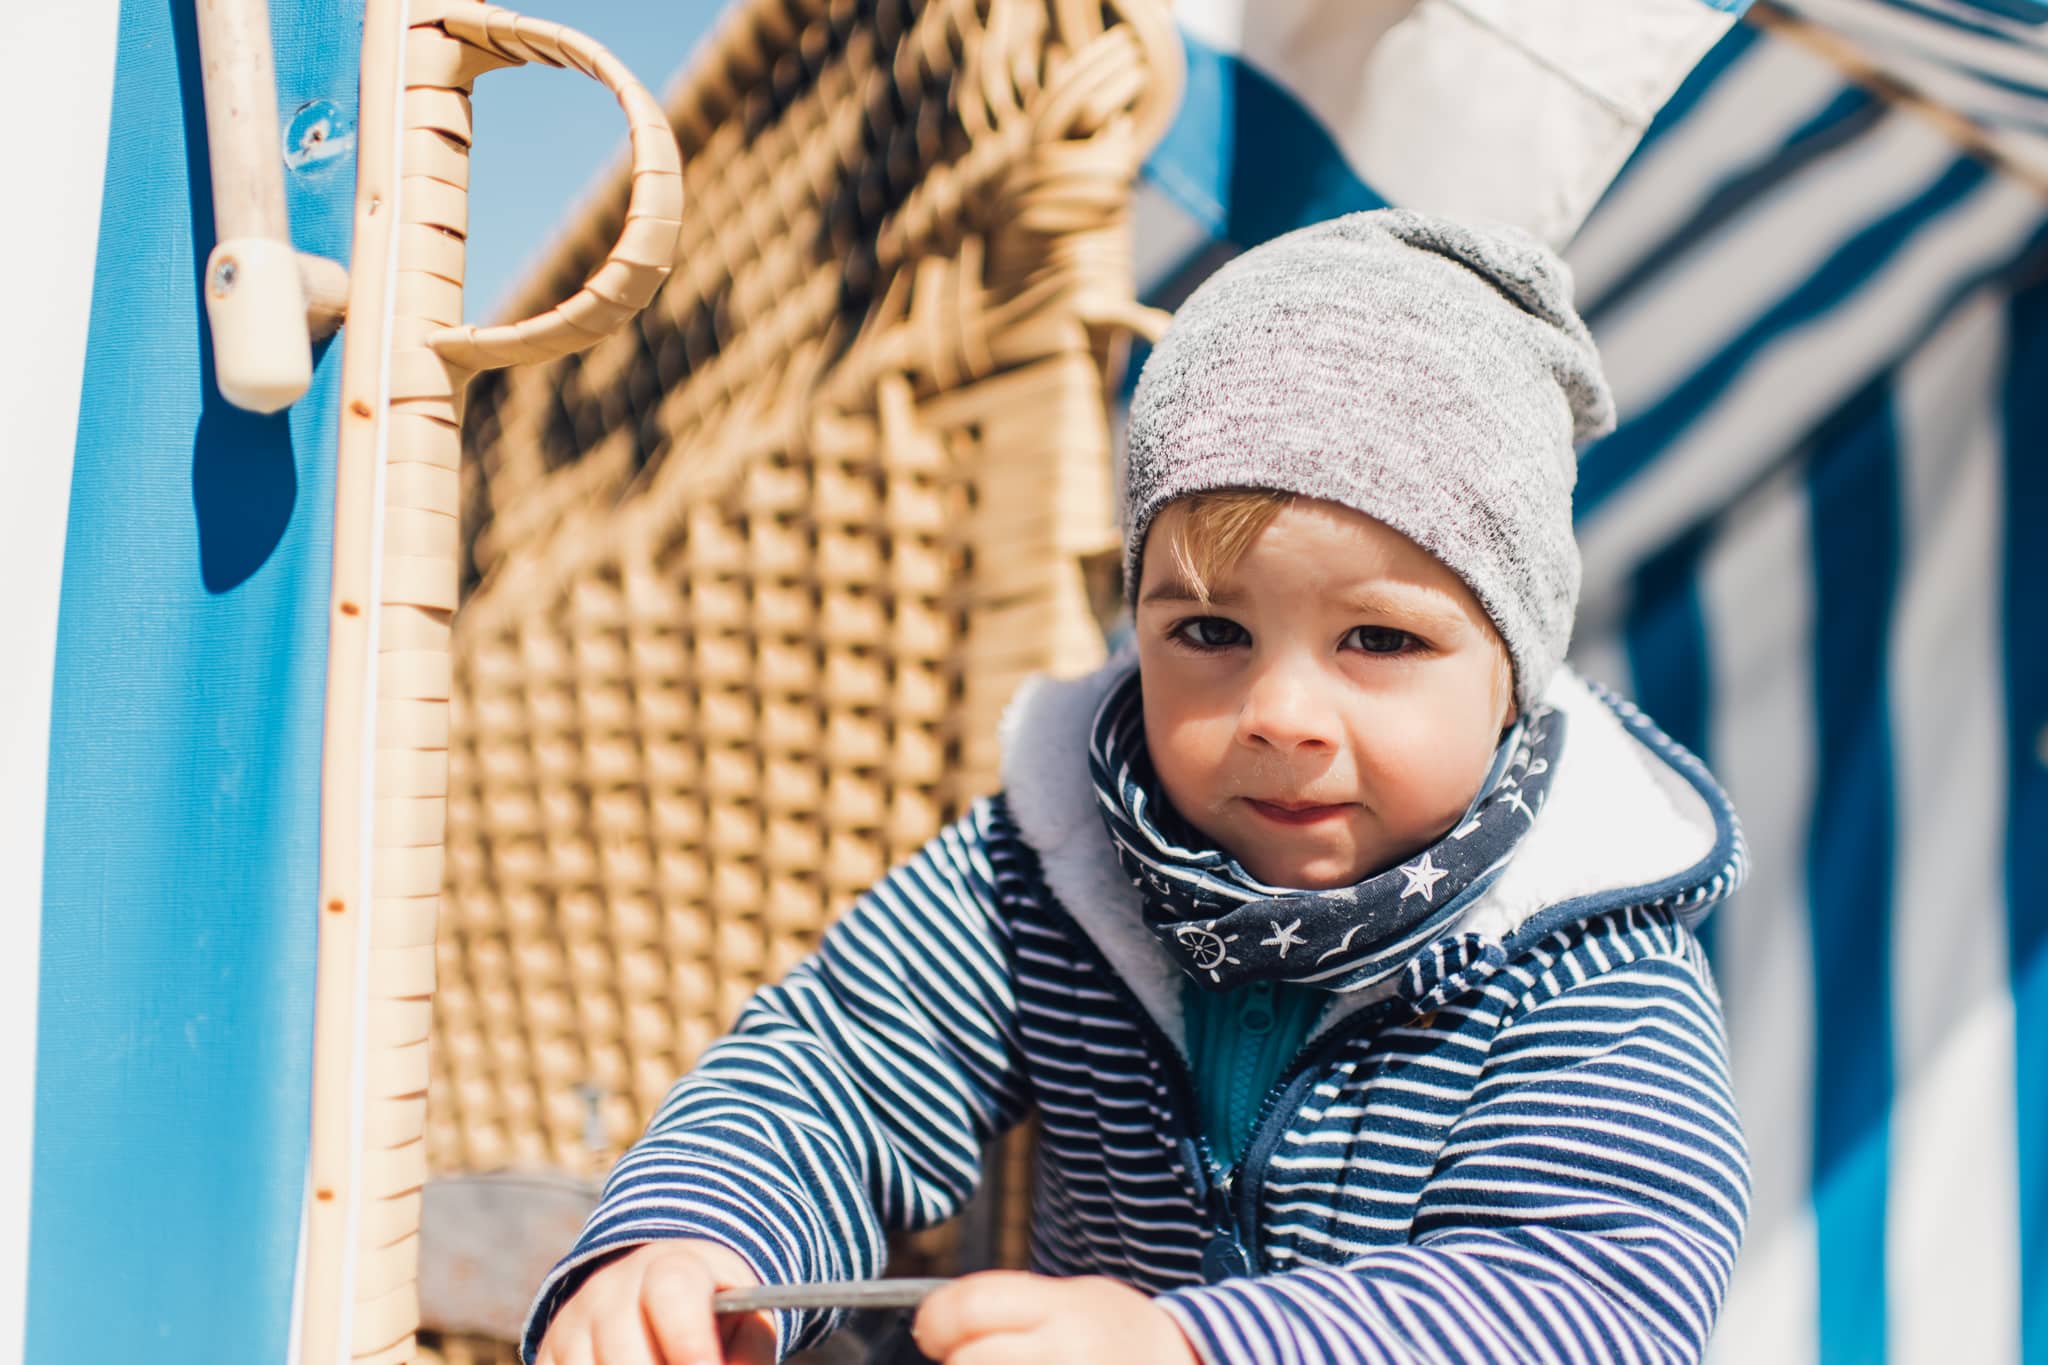 Familienfotografie  Baby, Kind und Meer: Fotos an der Ostsee